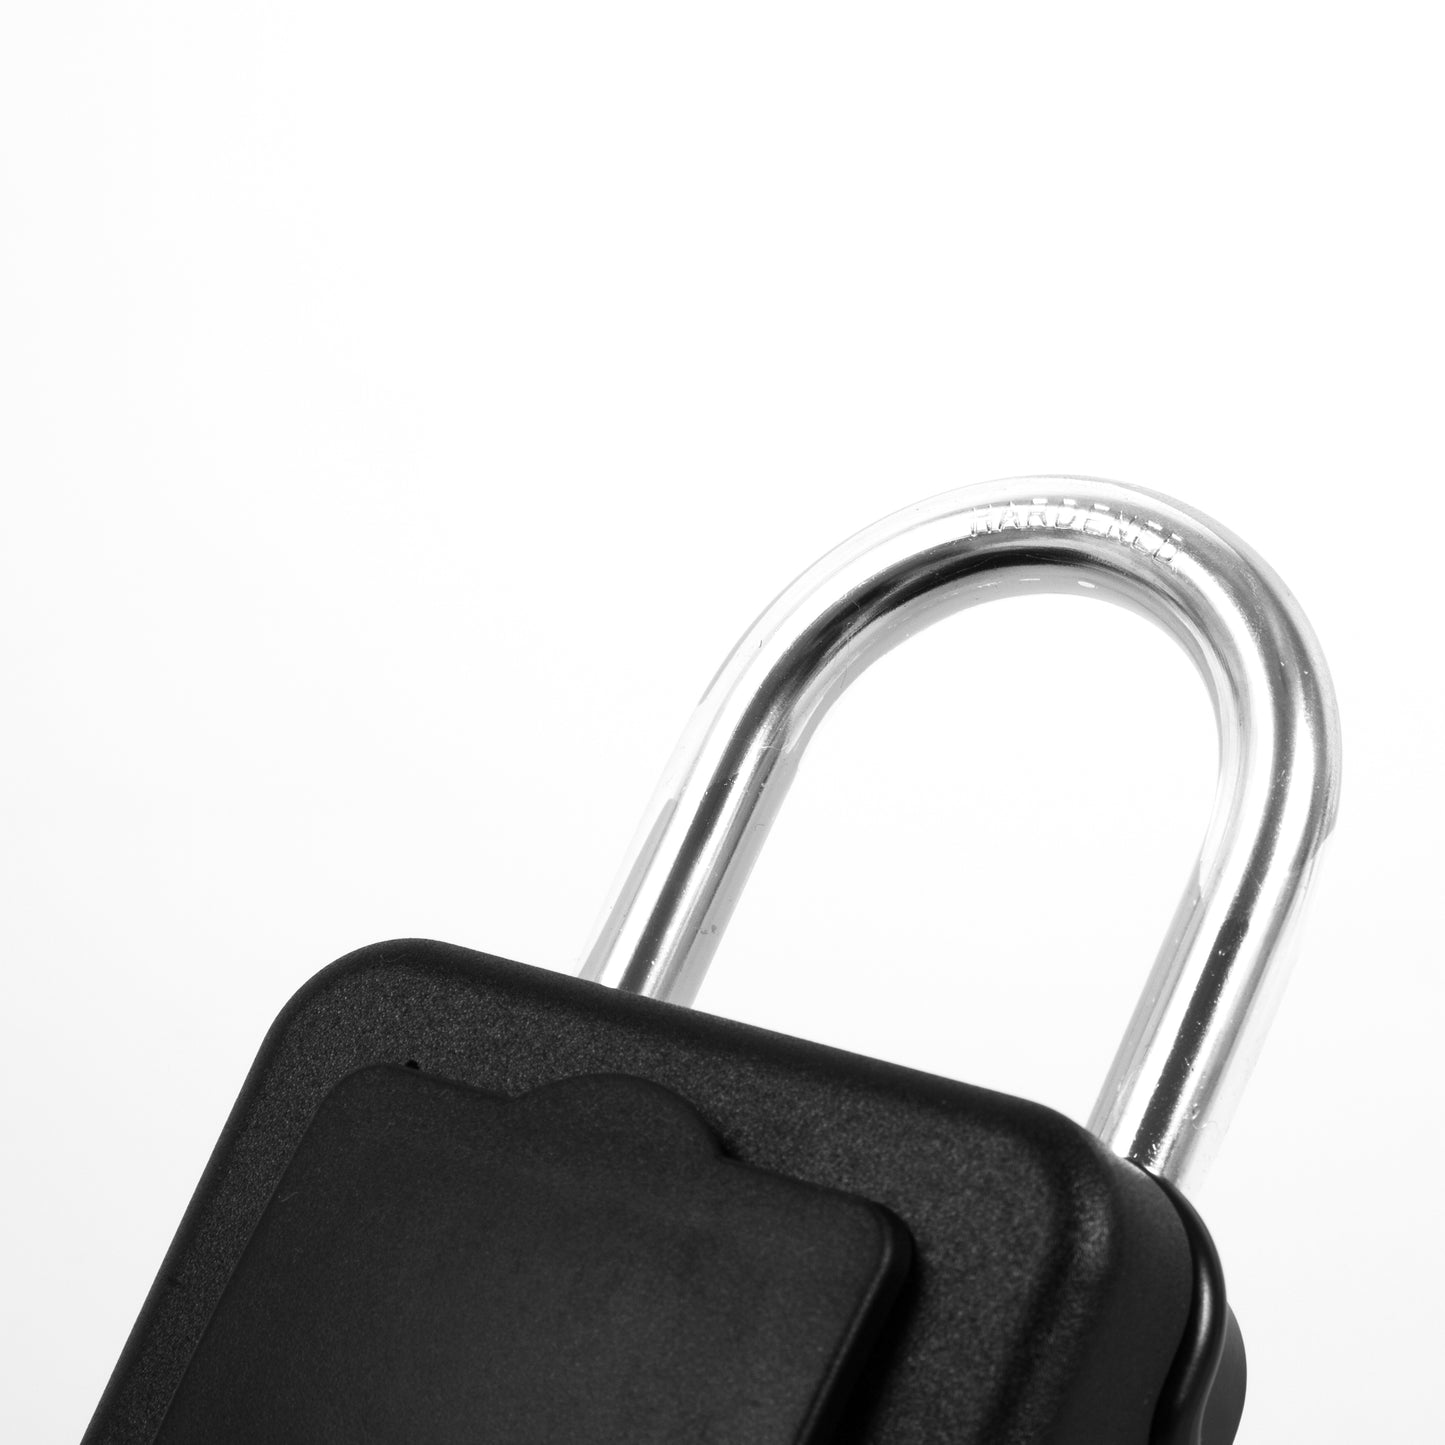 FCS Key Lock